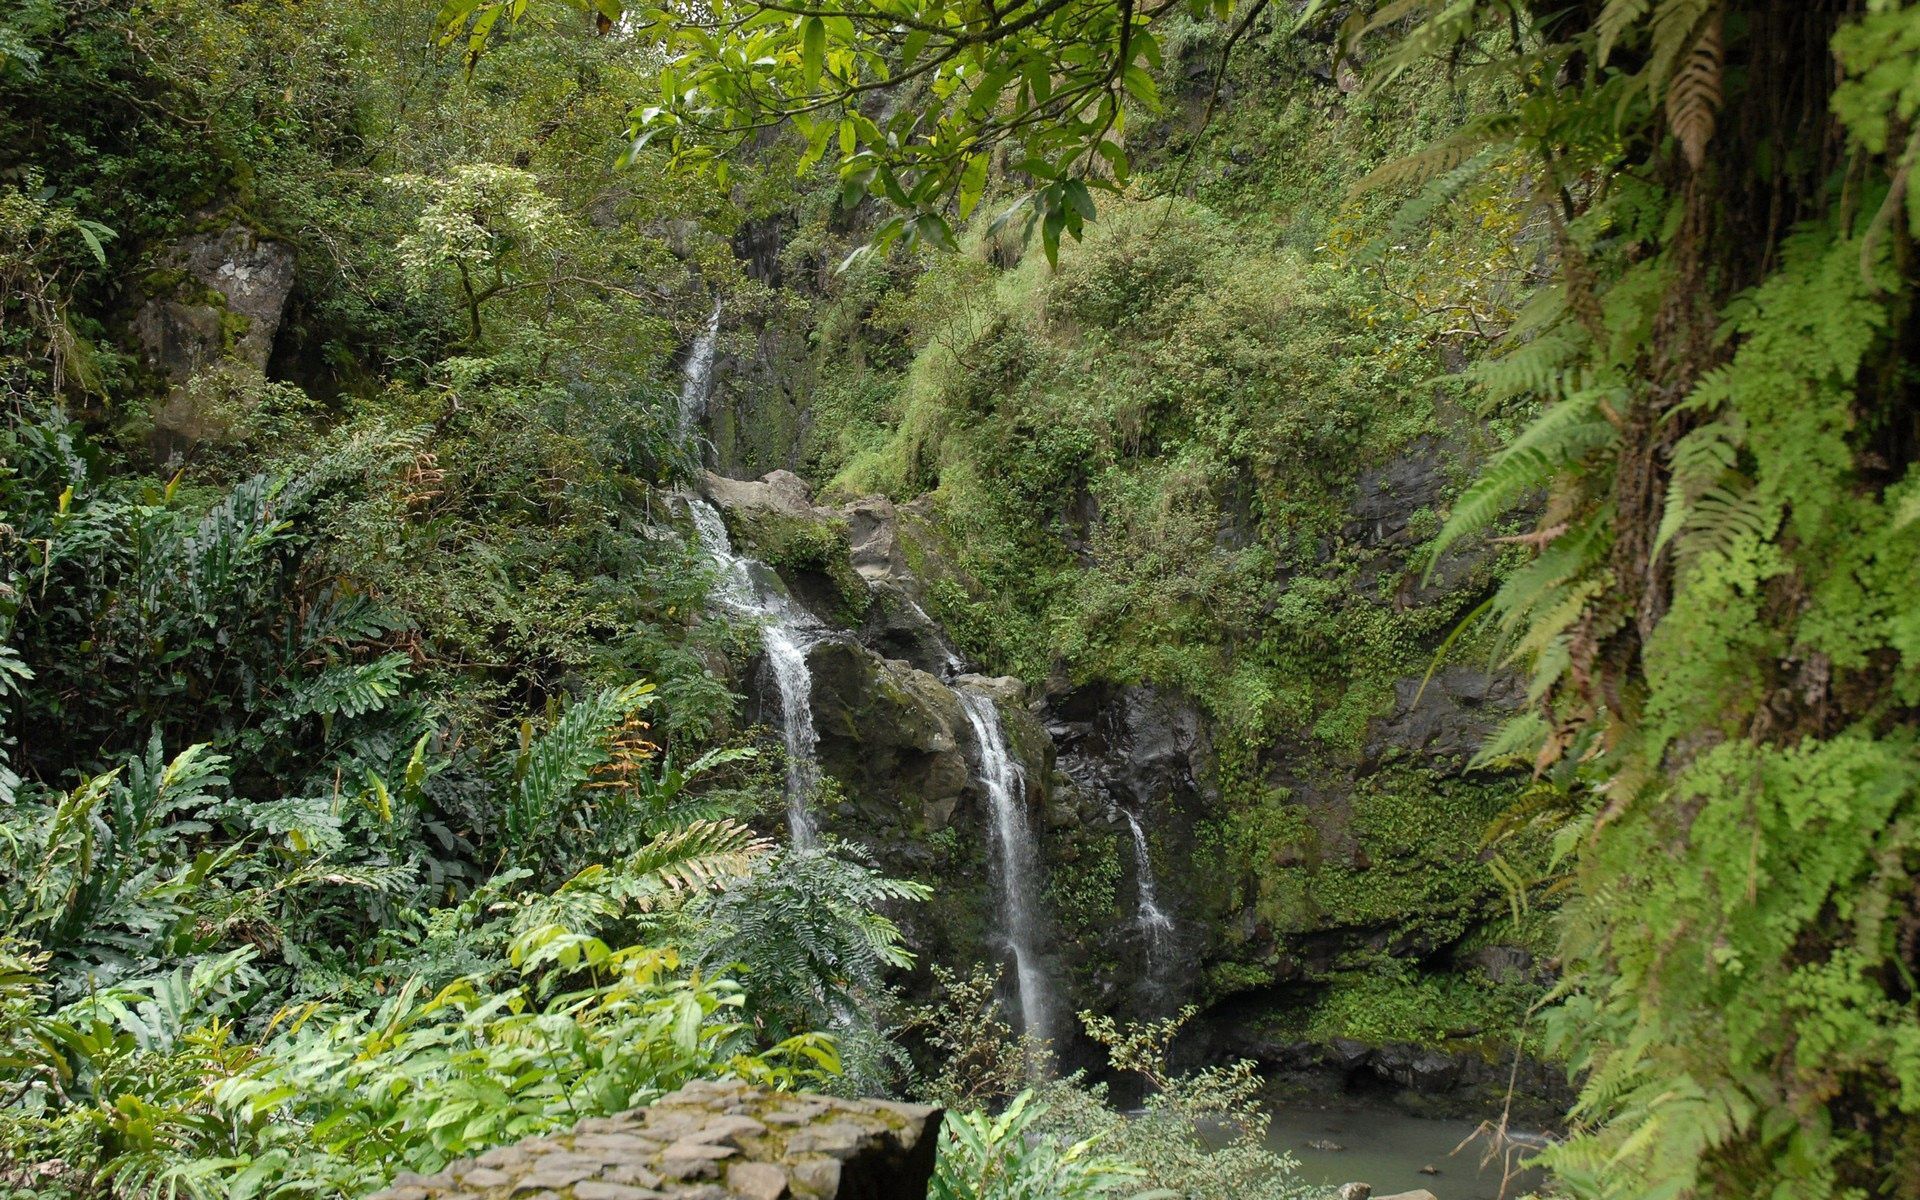 jungle, nature, rocks, waterfall, fern, vegetation wallpaper for mobile